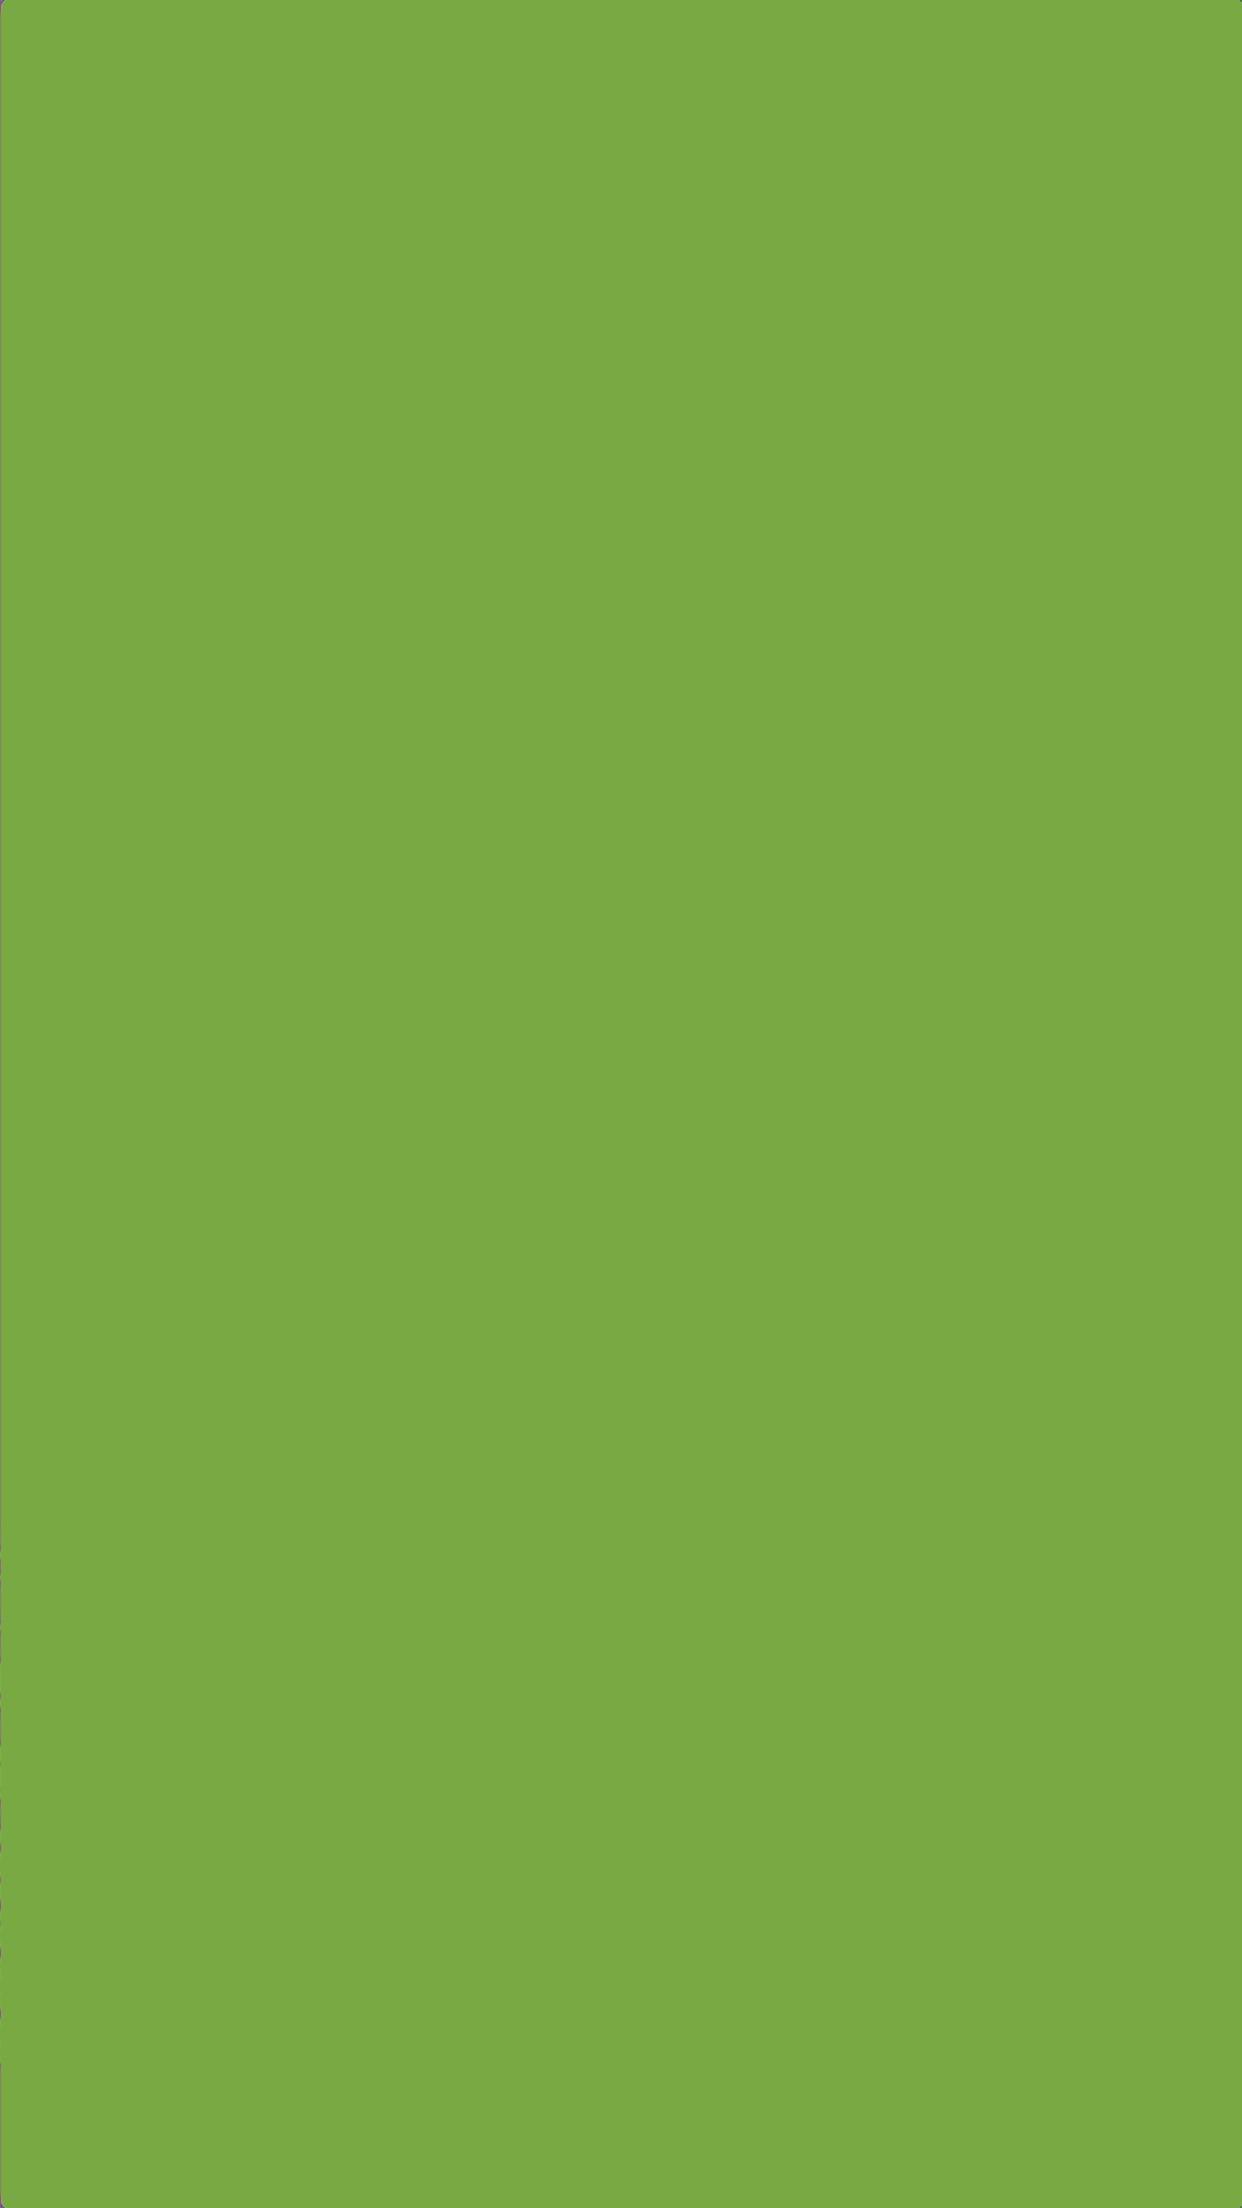 Plain Dark Green Wallpapers - Top Free Plain Dark Green Backgrounds -  WallpaperAccess